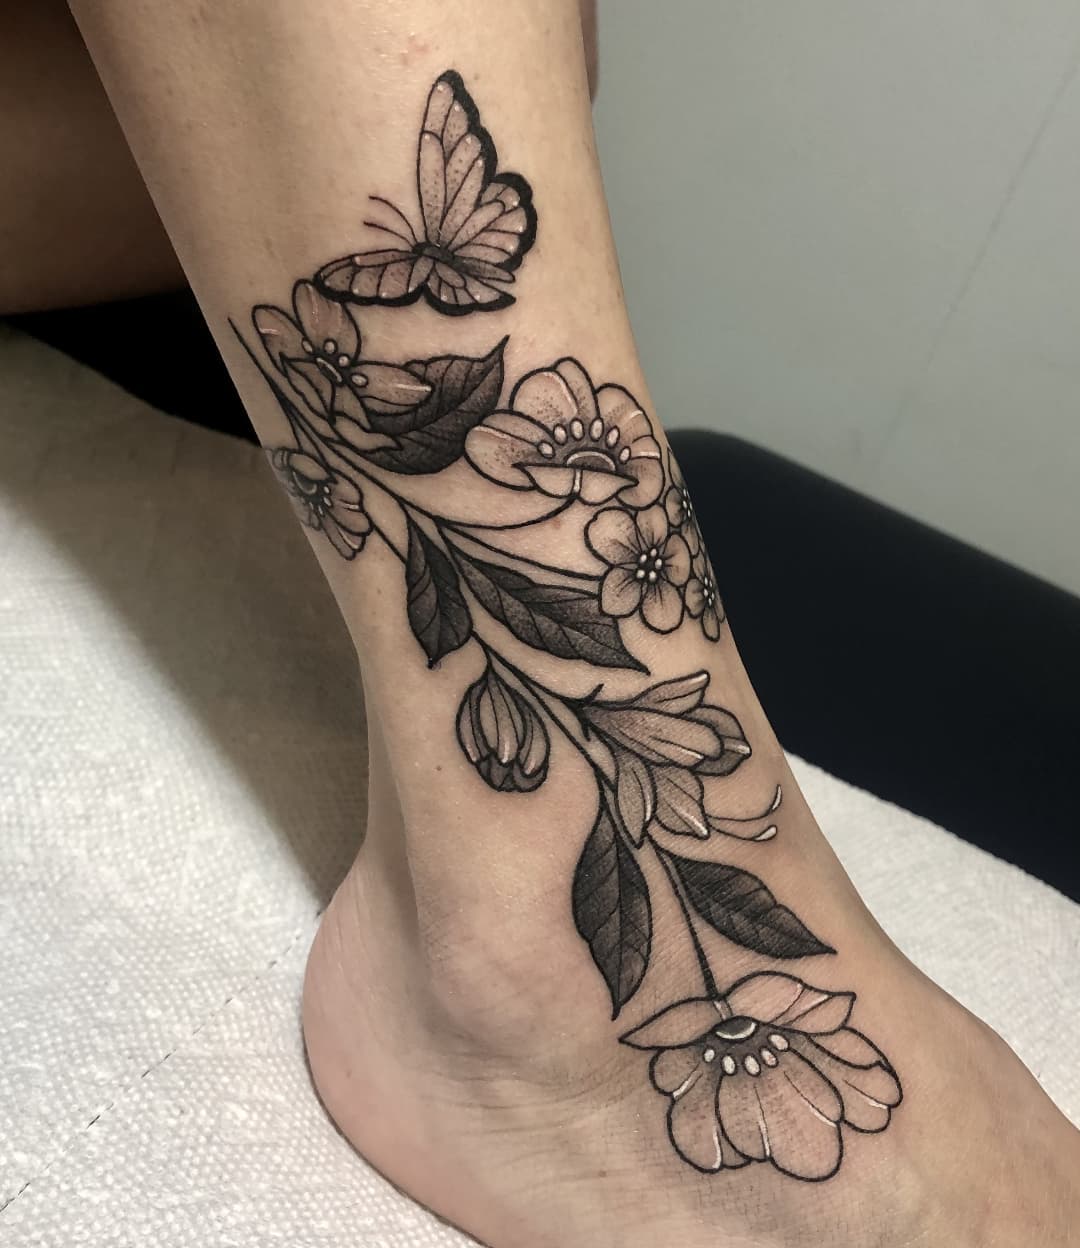 Tatuaje de un lirio con una mariposa sobre la pierna